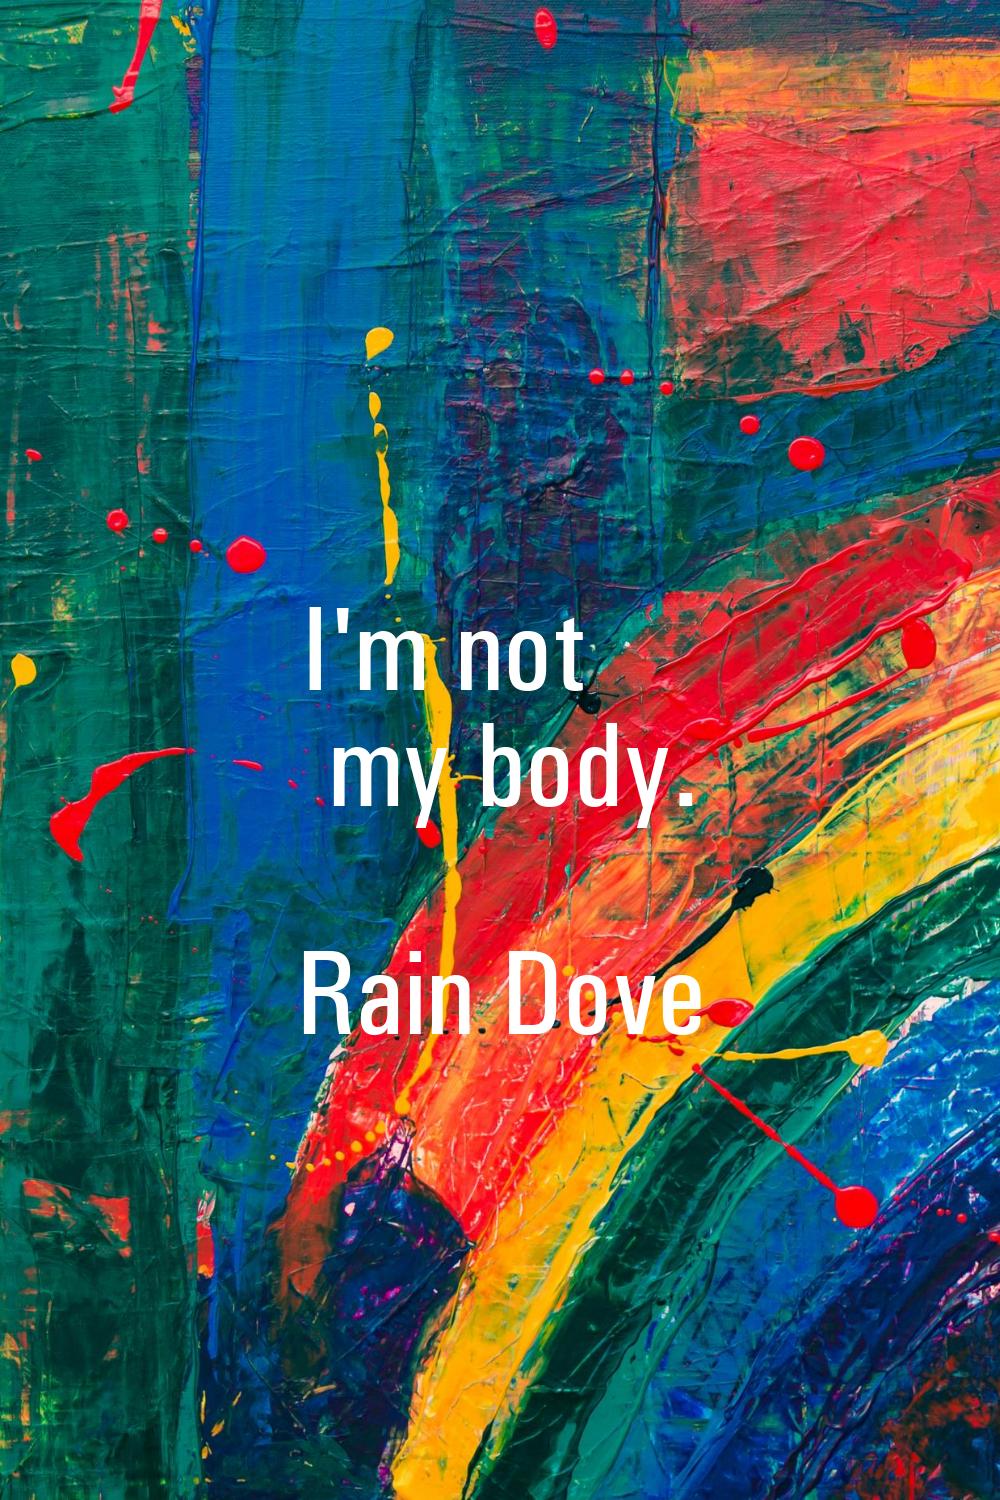 I'm not my body.